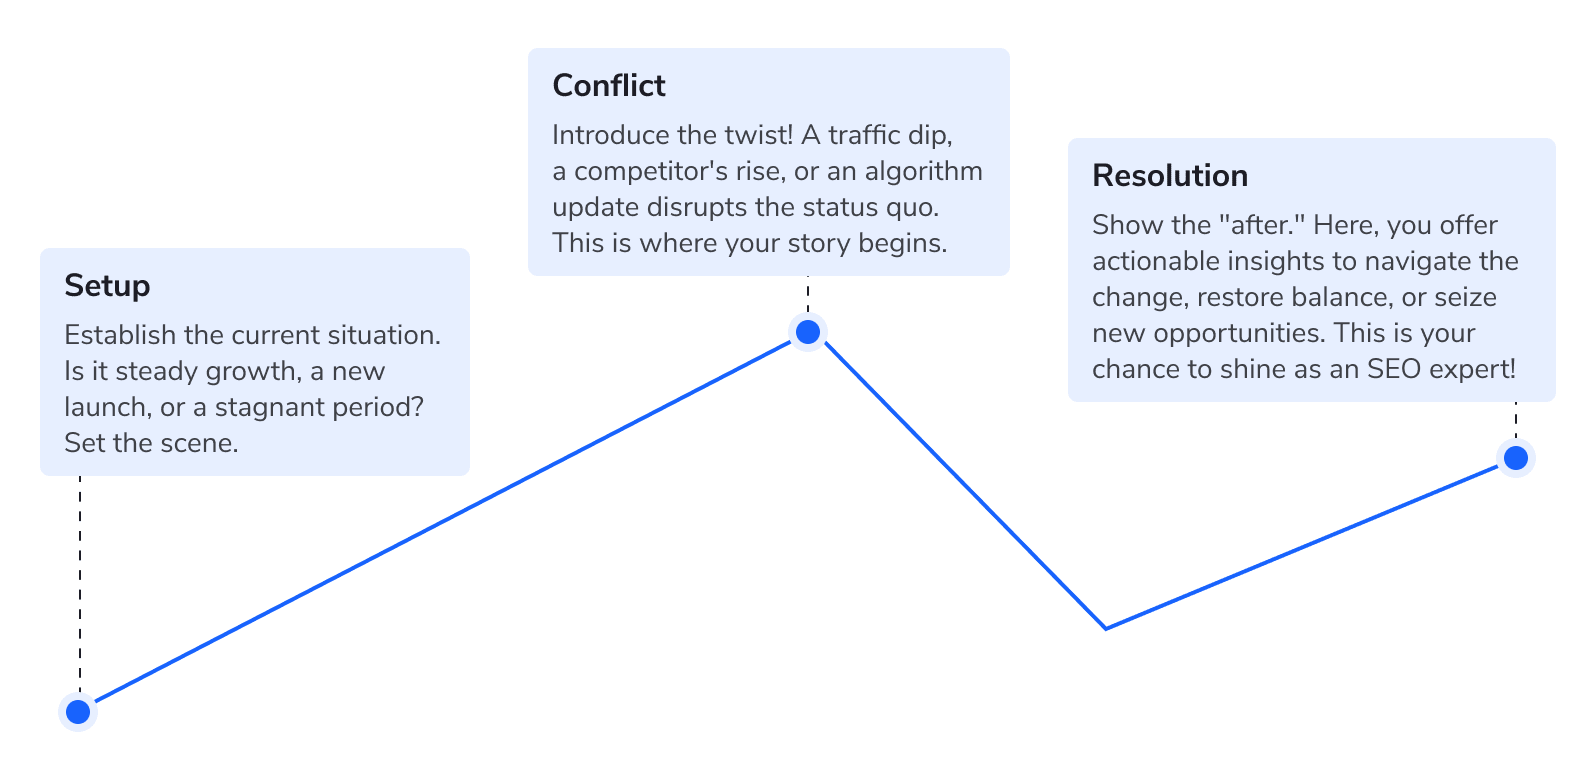 The setup- conflict- resolution framework